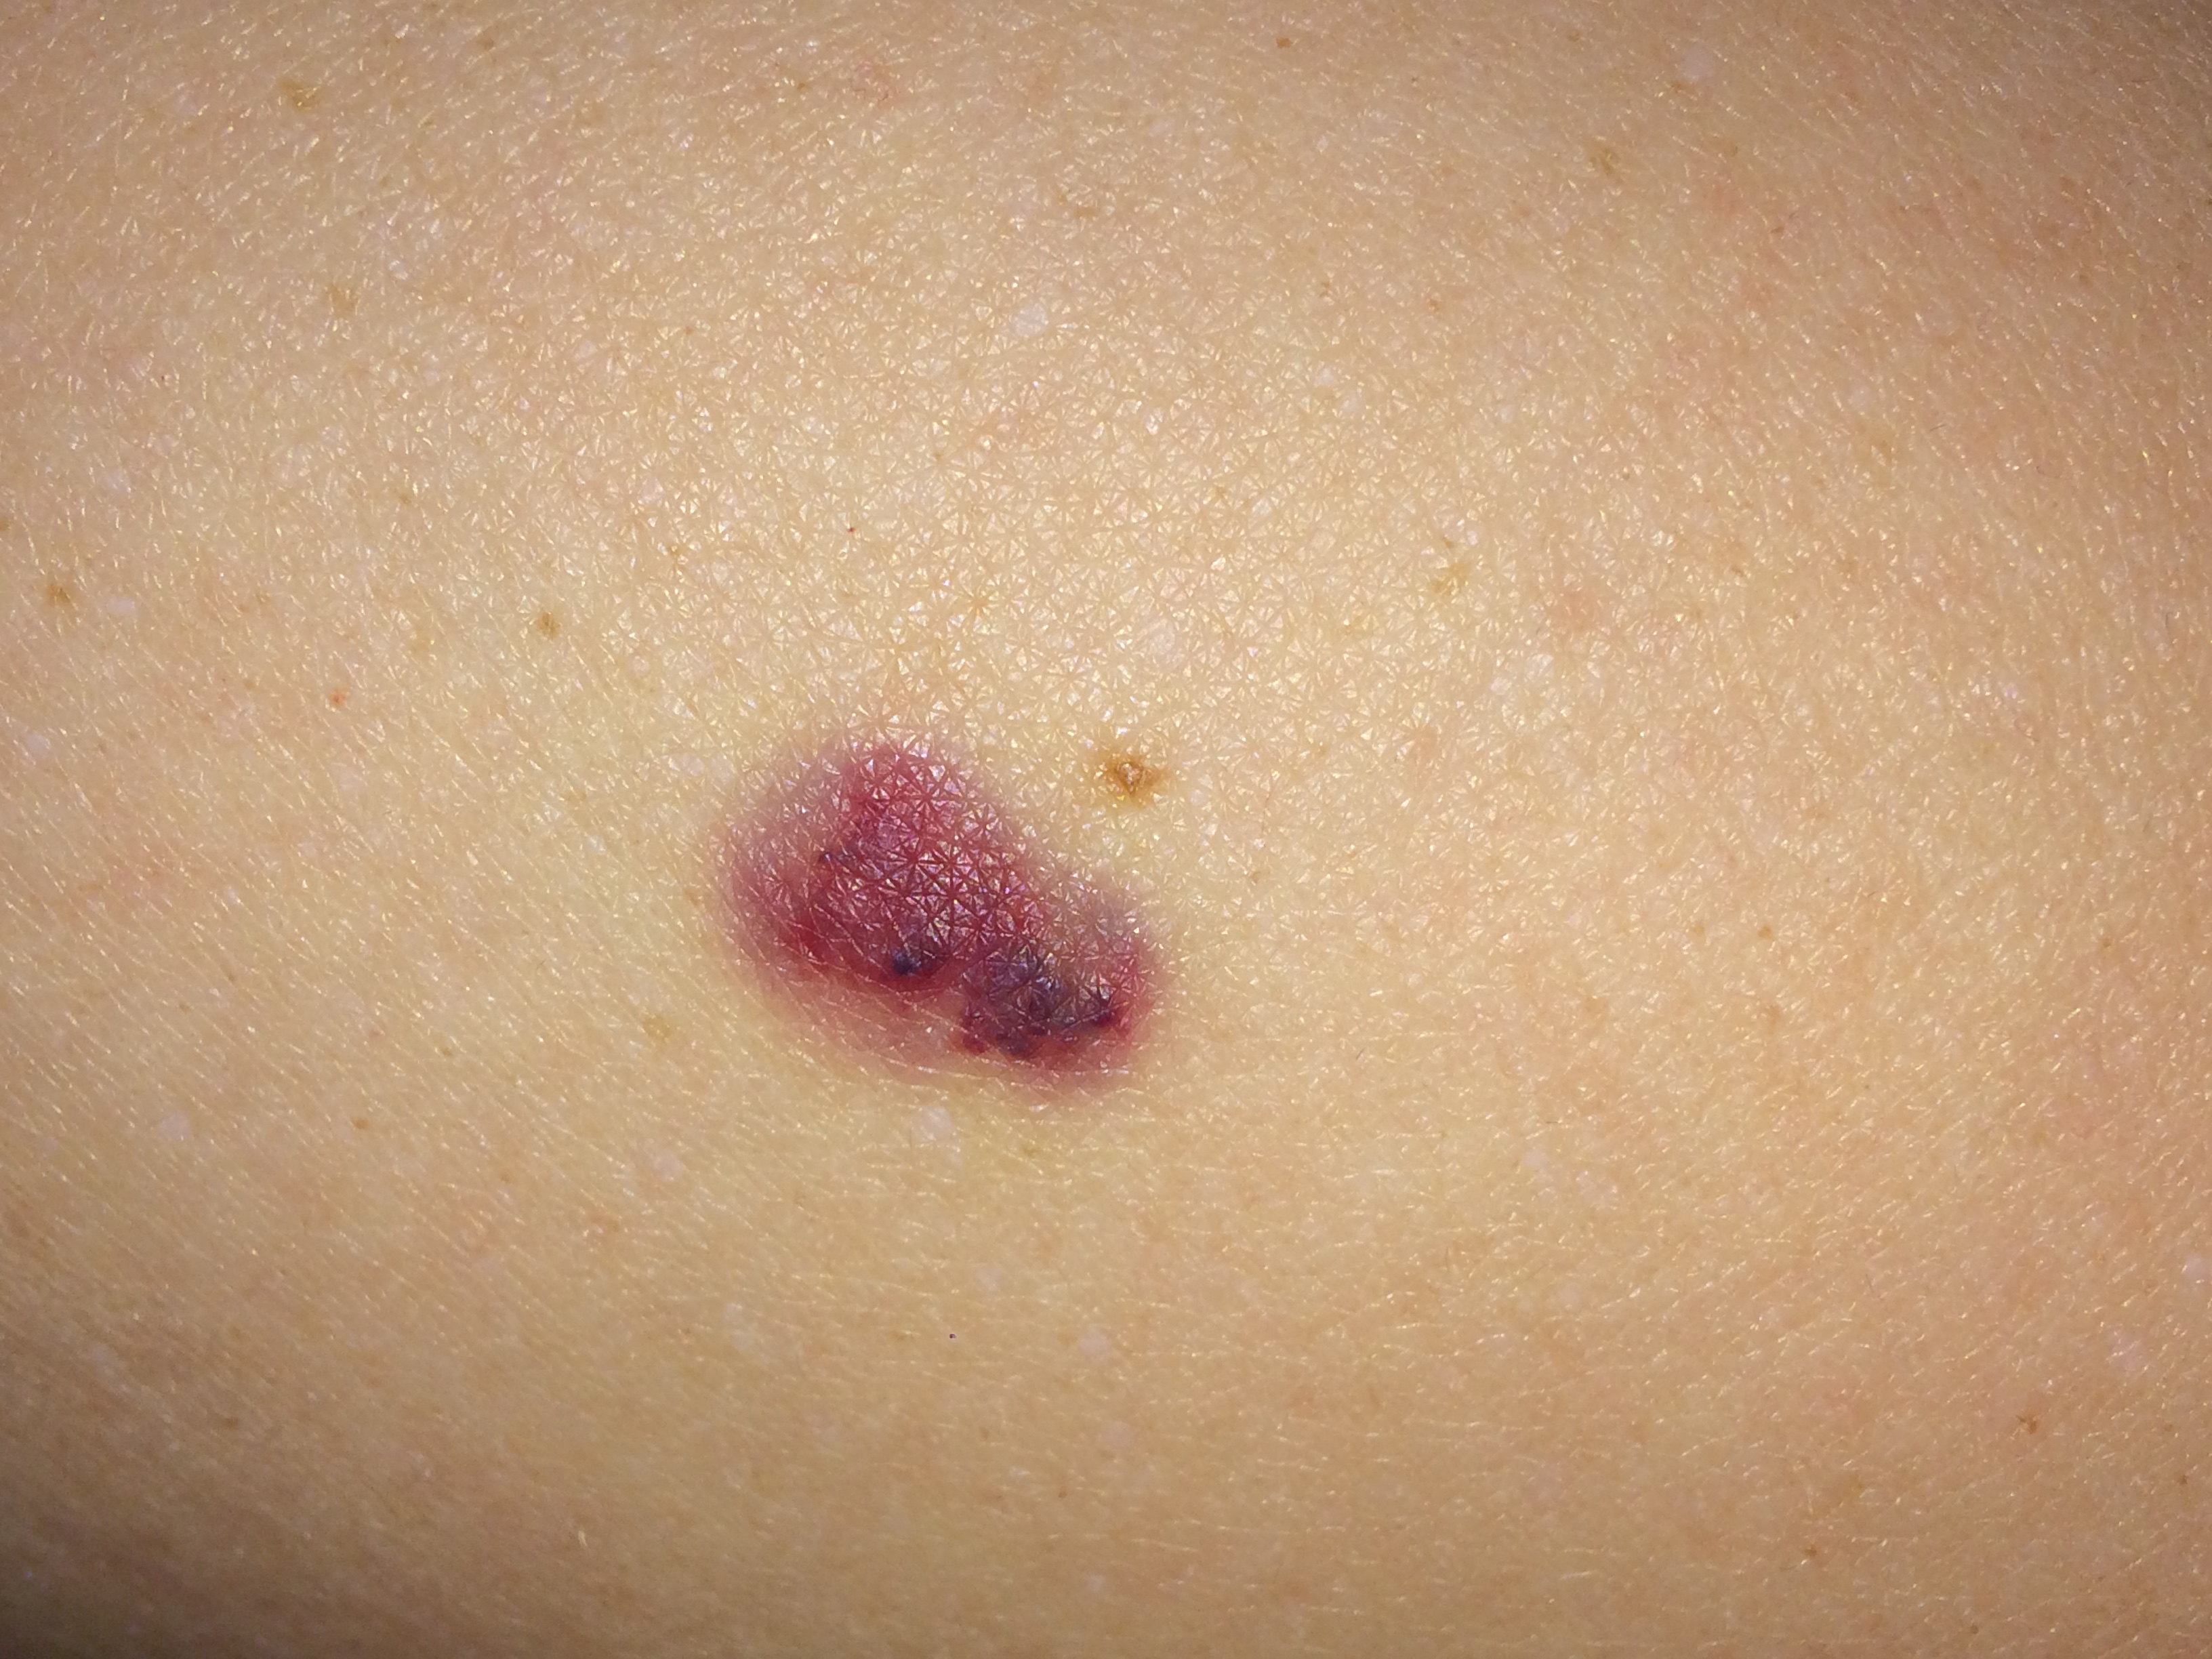 Haut blutpunkte unter der Tardive Hämangiome